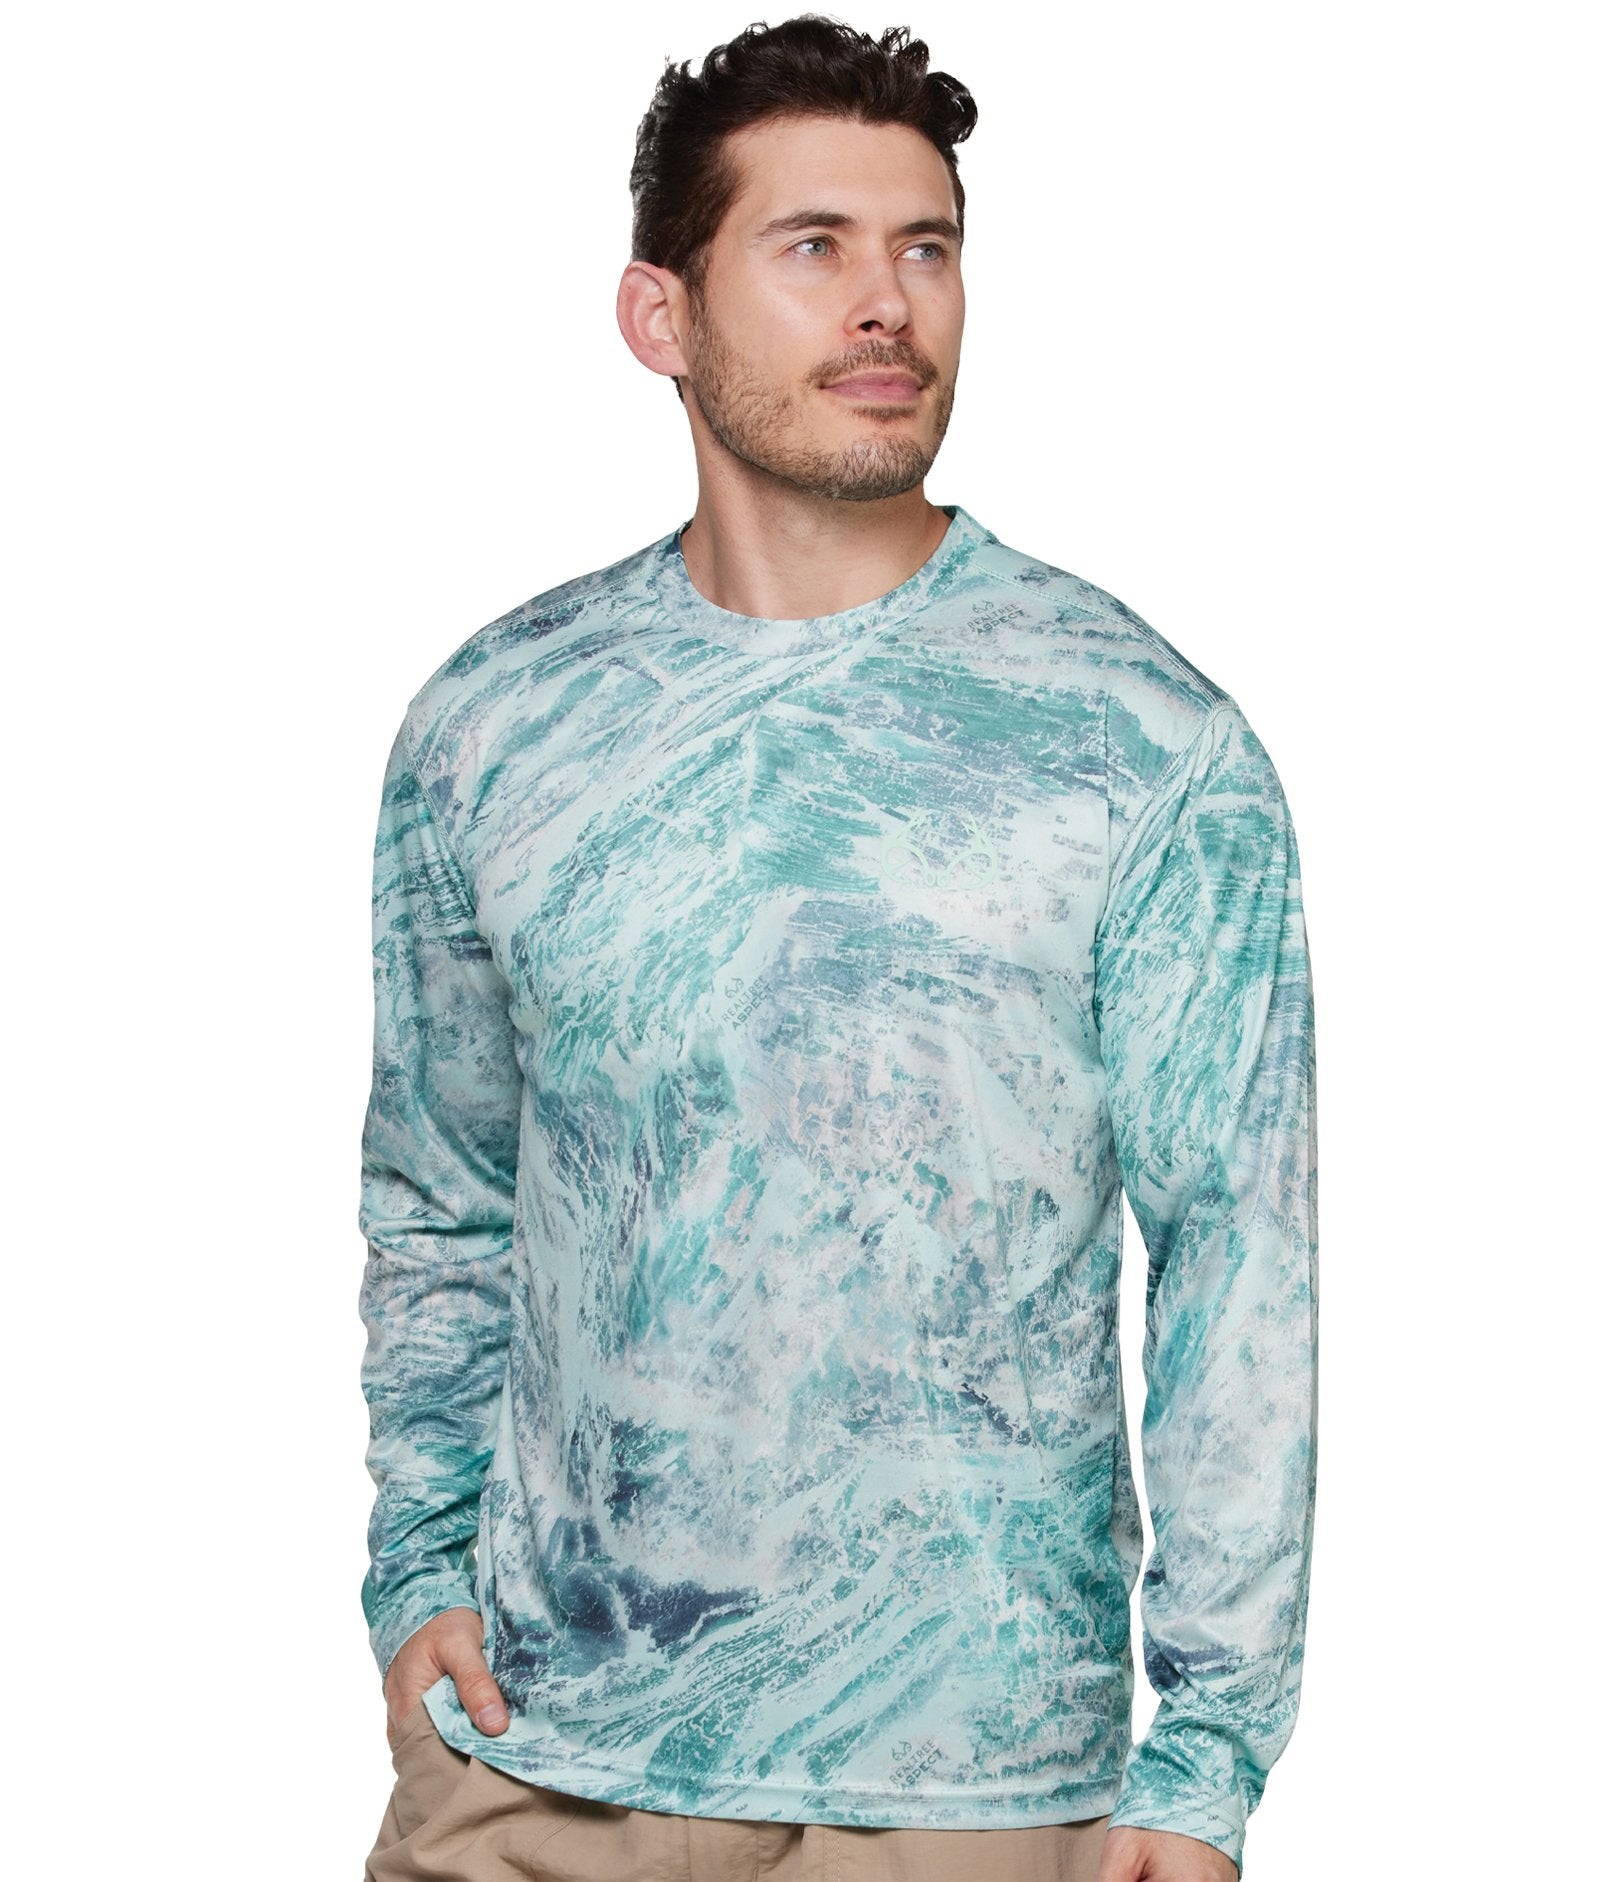 Realtree Fishing Shirt Large Color Gray NEW